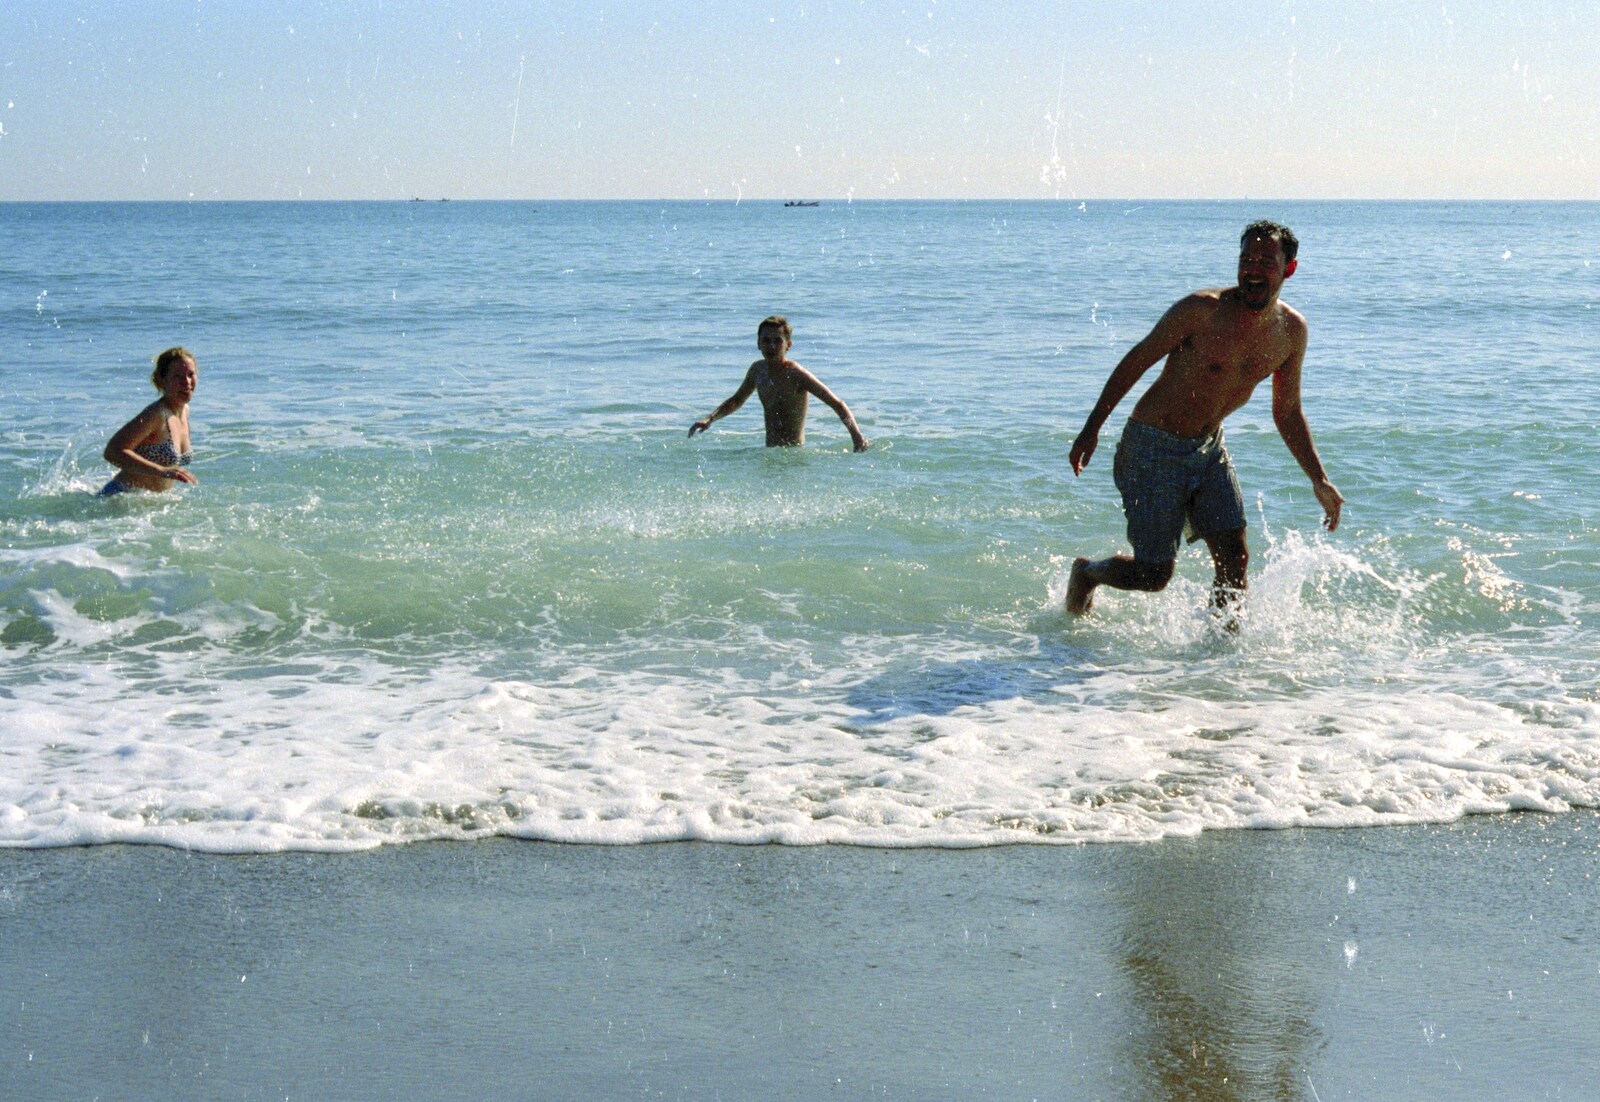 Paul runs out of the sea from The CISU Massive do Malaga, Spain - November 14th 1998